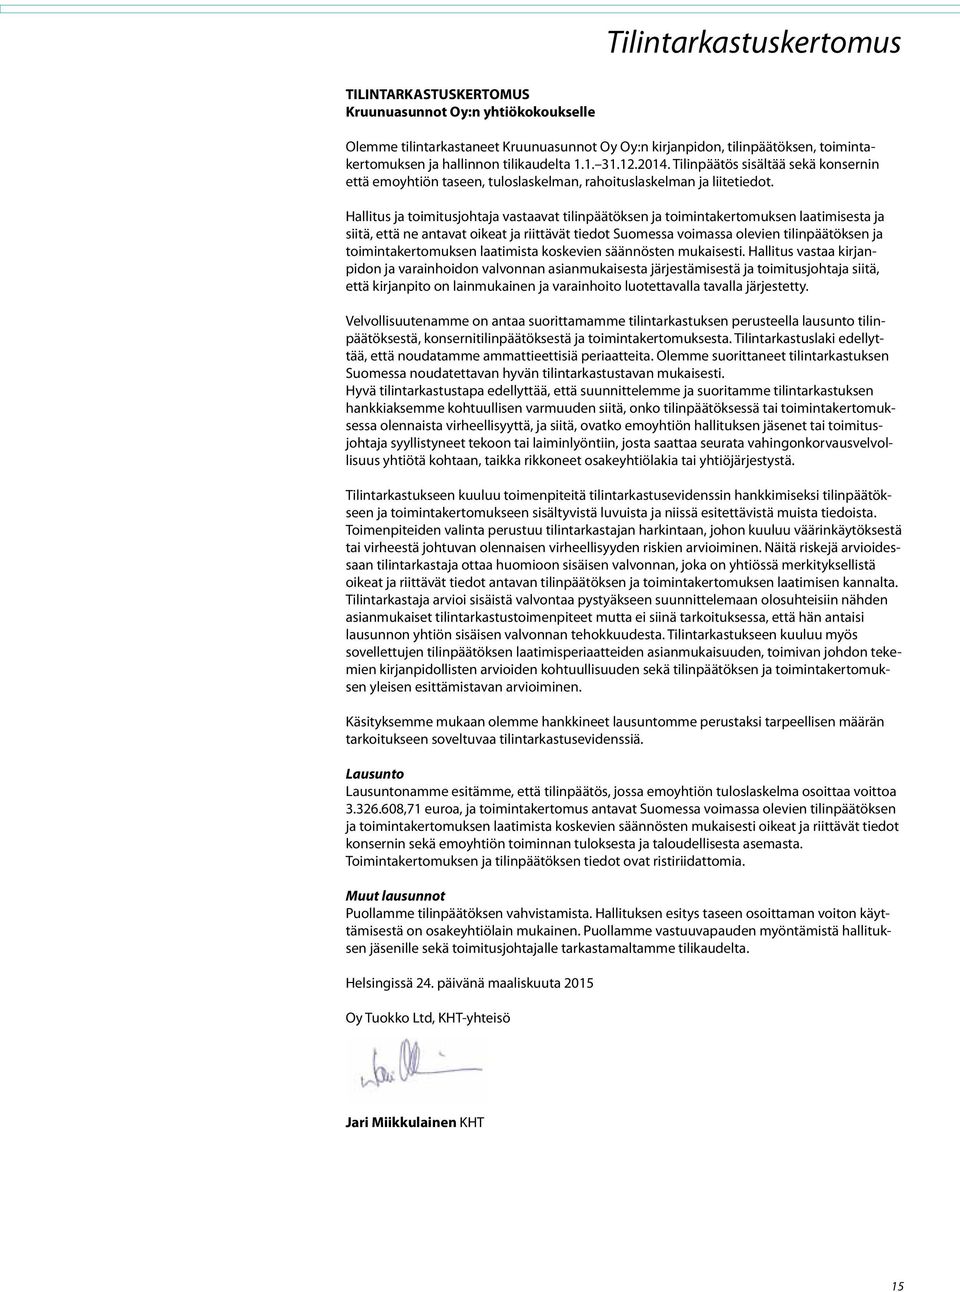 Hallitus ja toimitusjohtaja vastaavat tilinpäätöksen ja toimintakertomuksen laatimisesta ja siitä, että ne antavat oikeat ja riittävät tiedot Suomessa voimassa olevien tilinpäätöksen ja